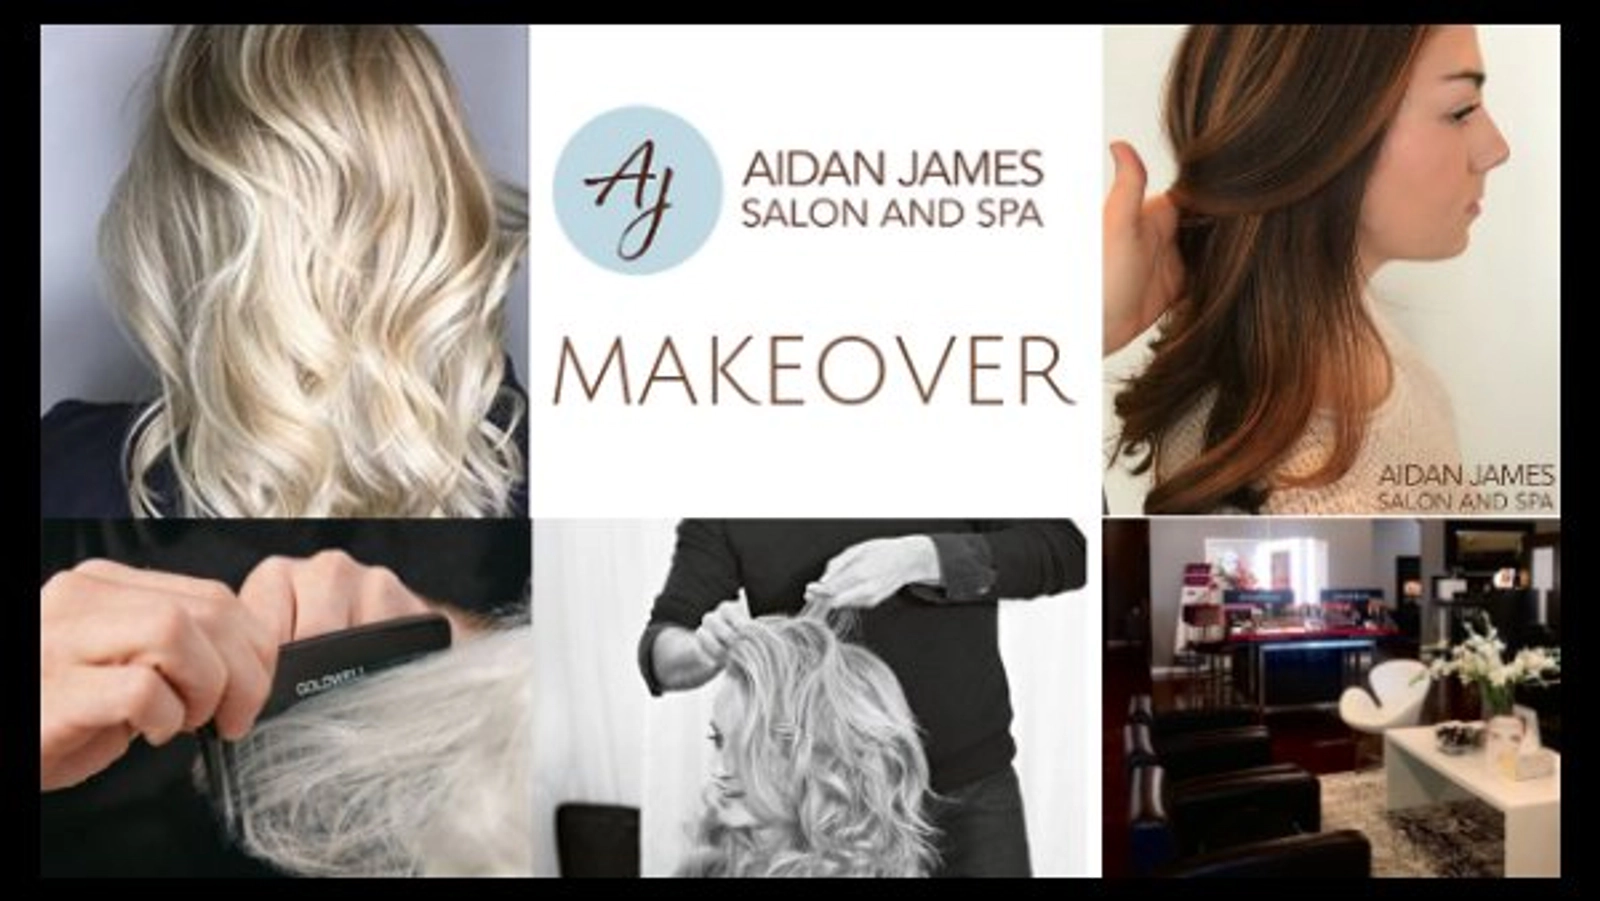  Aidan James Salon and Spa Makeover  - Thumbnail Image